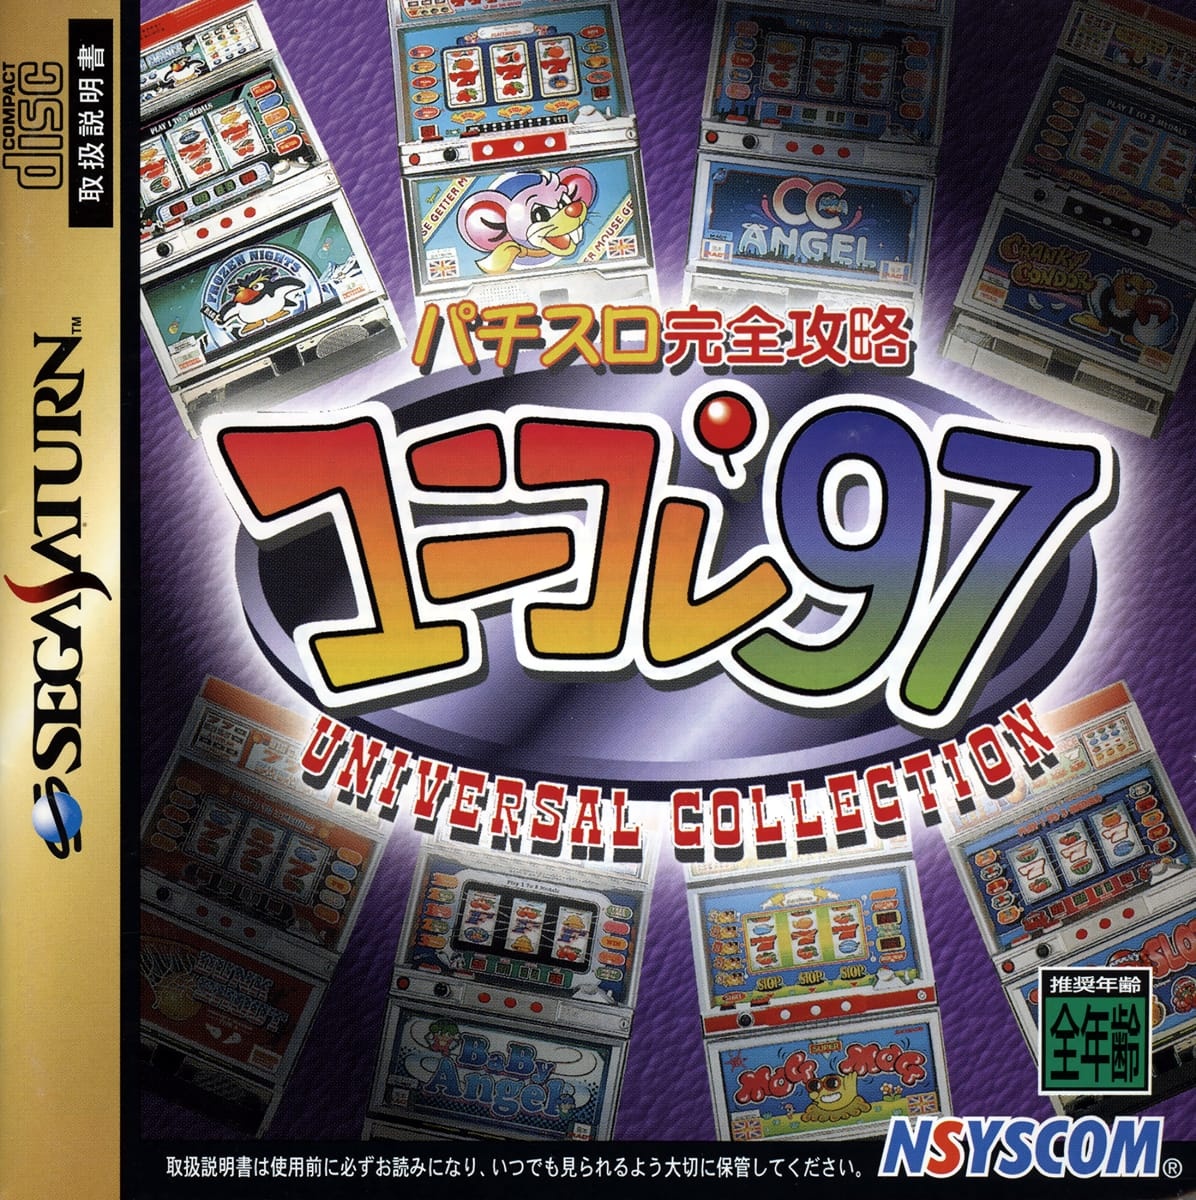 Capa do jogo Pachi-Slot Kanzen Kouryaku Uni-Colle97